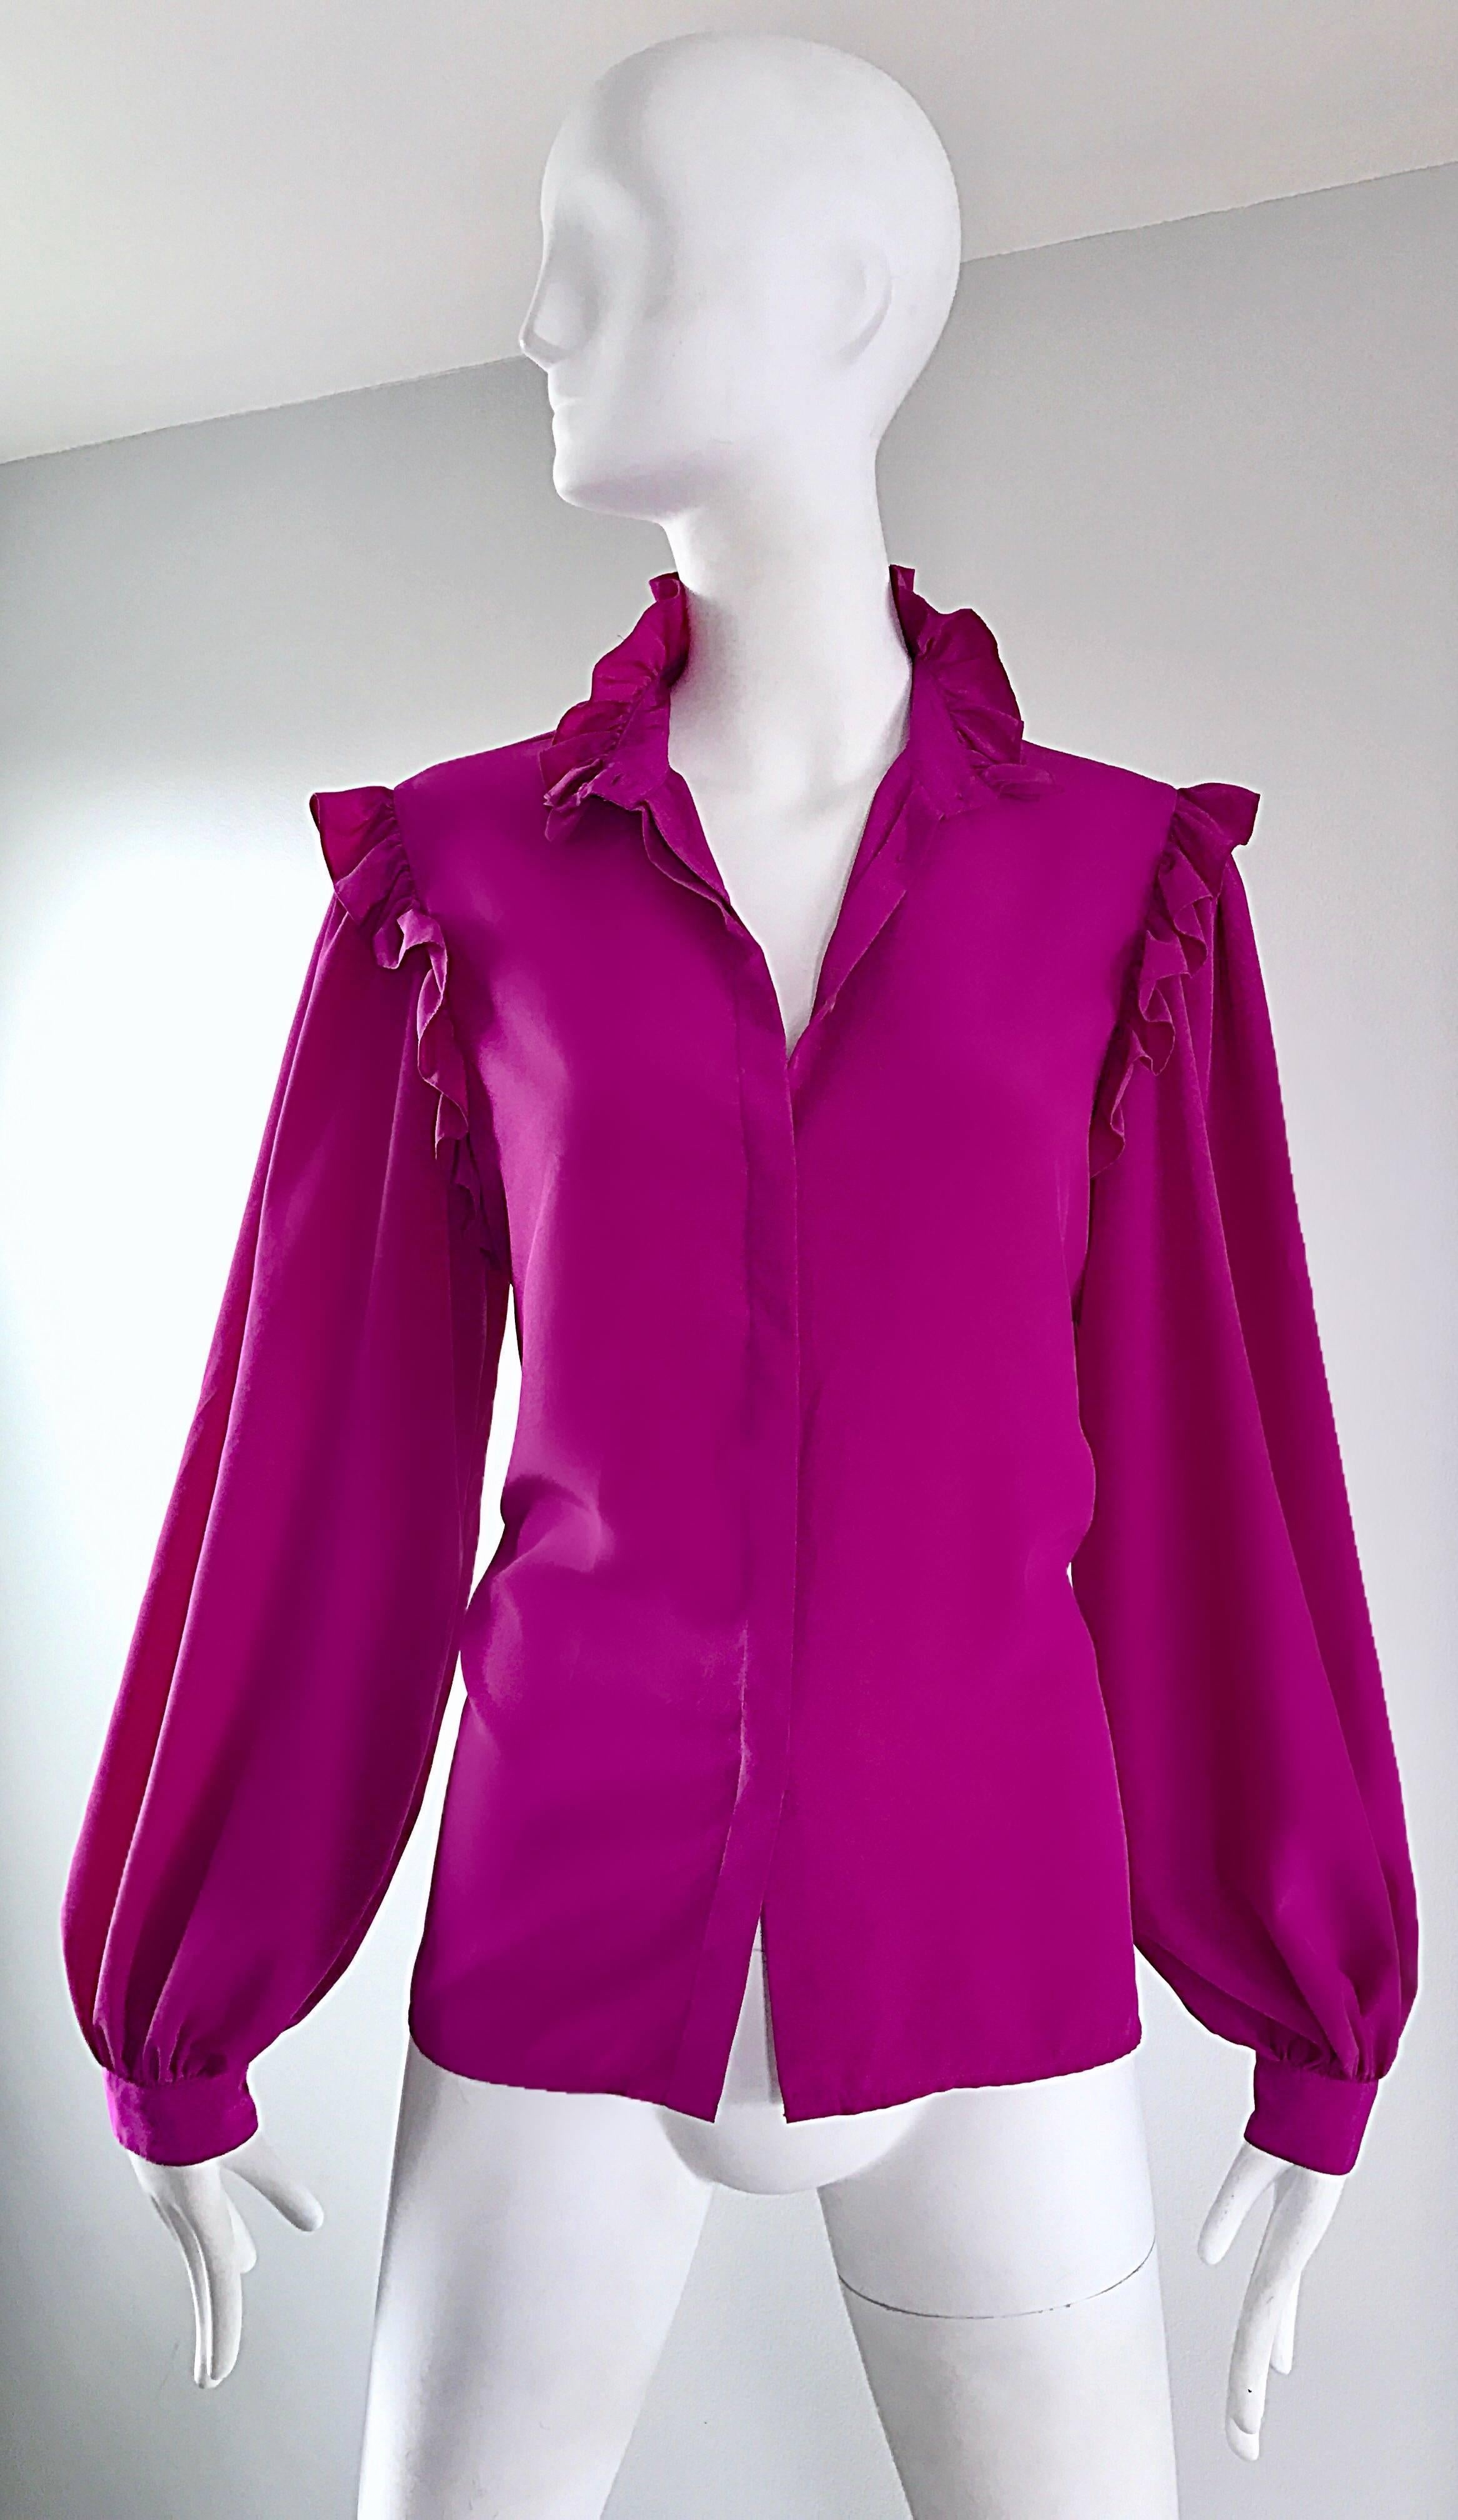 Oscar de la Renta 1970s Magenta Fuchsia Pink Silk Bishop Sleeve Vintage Blouse 2